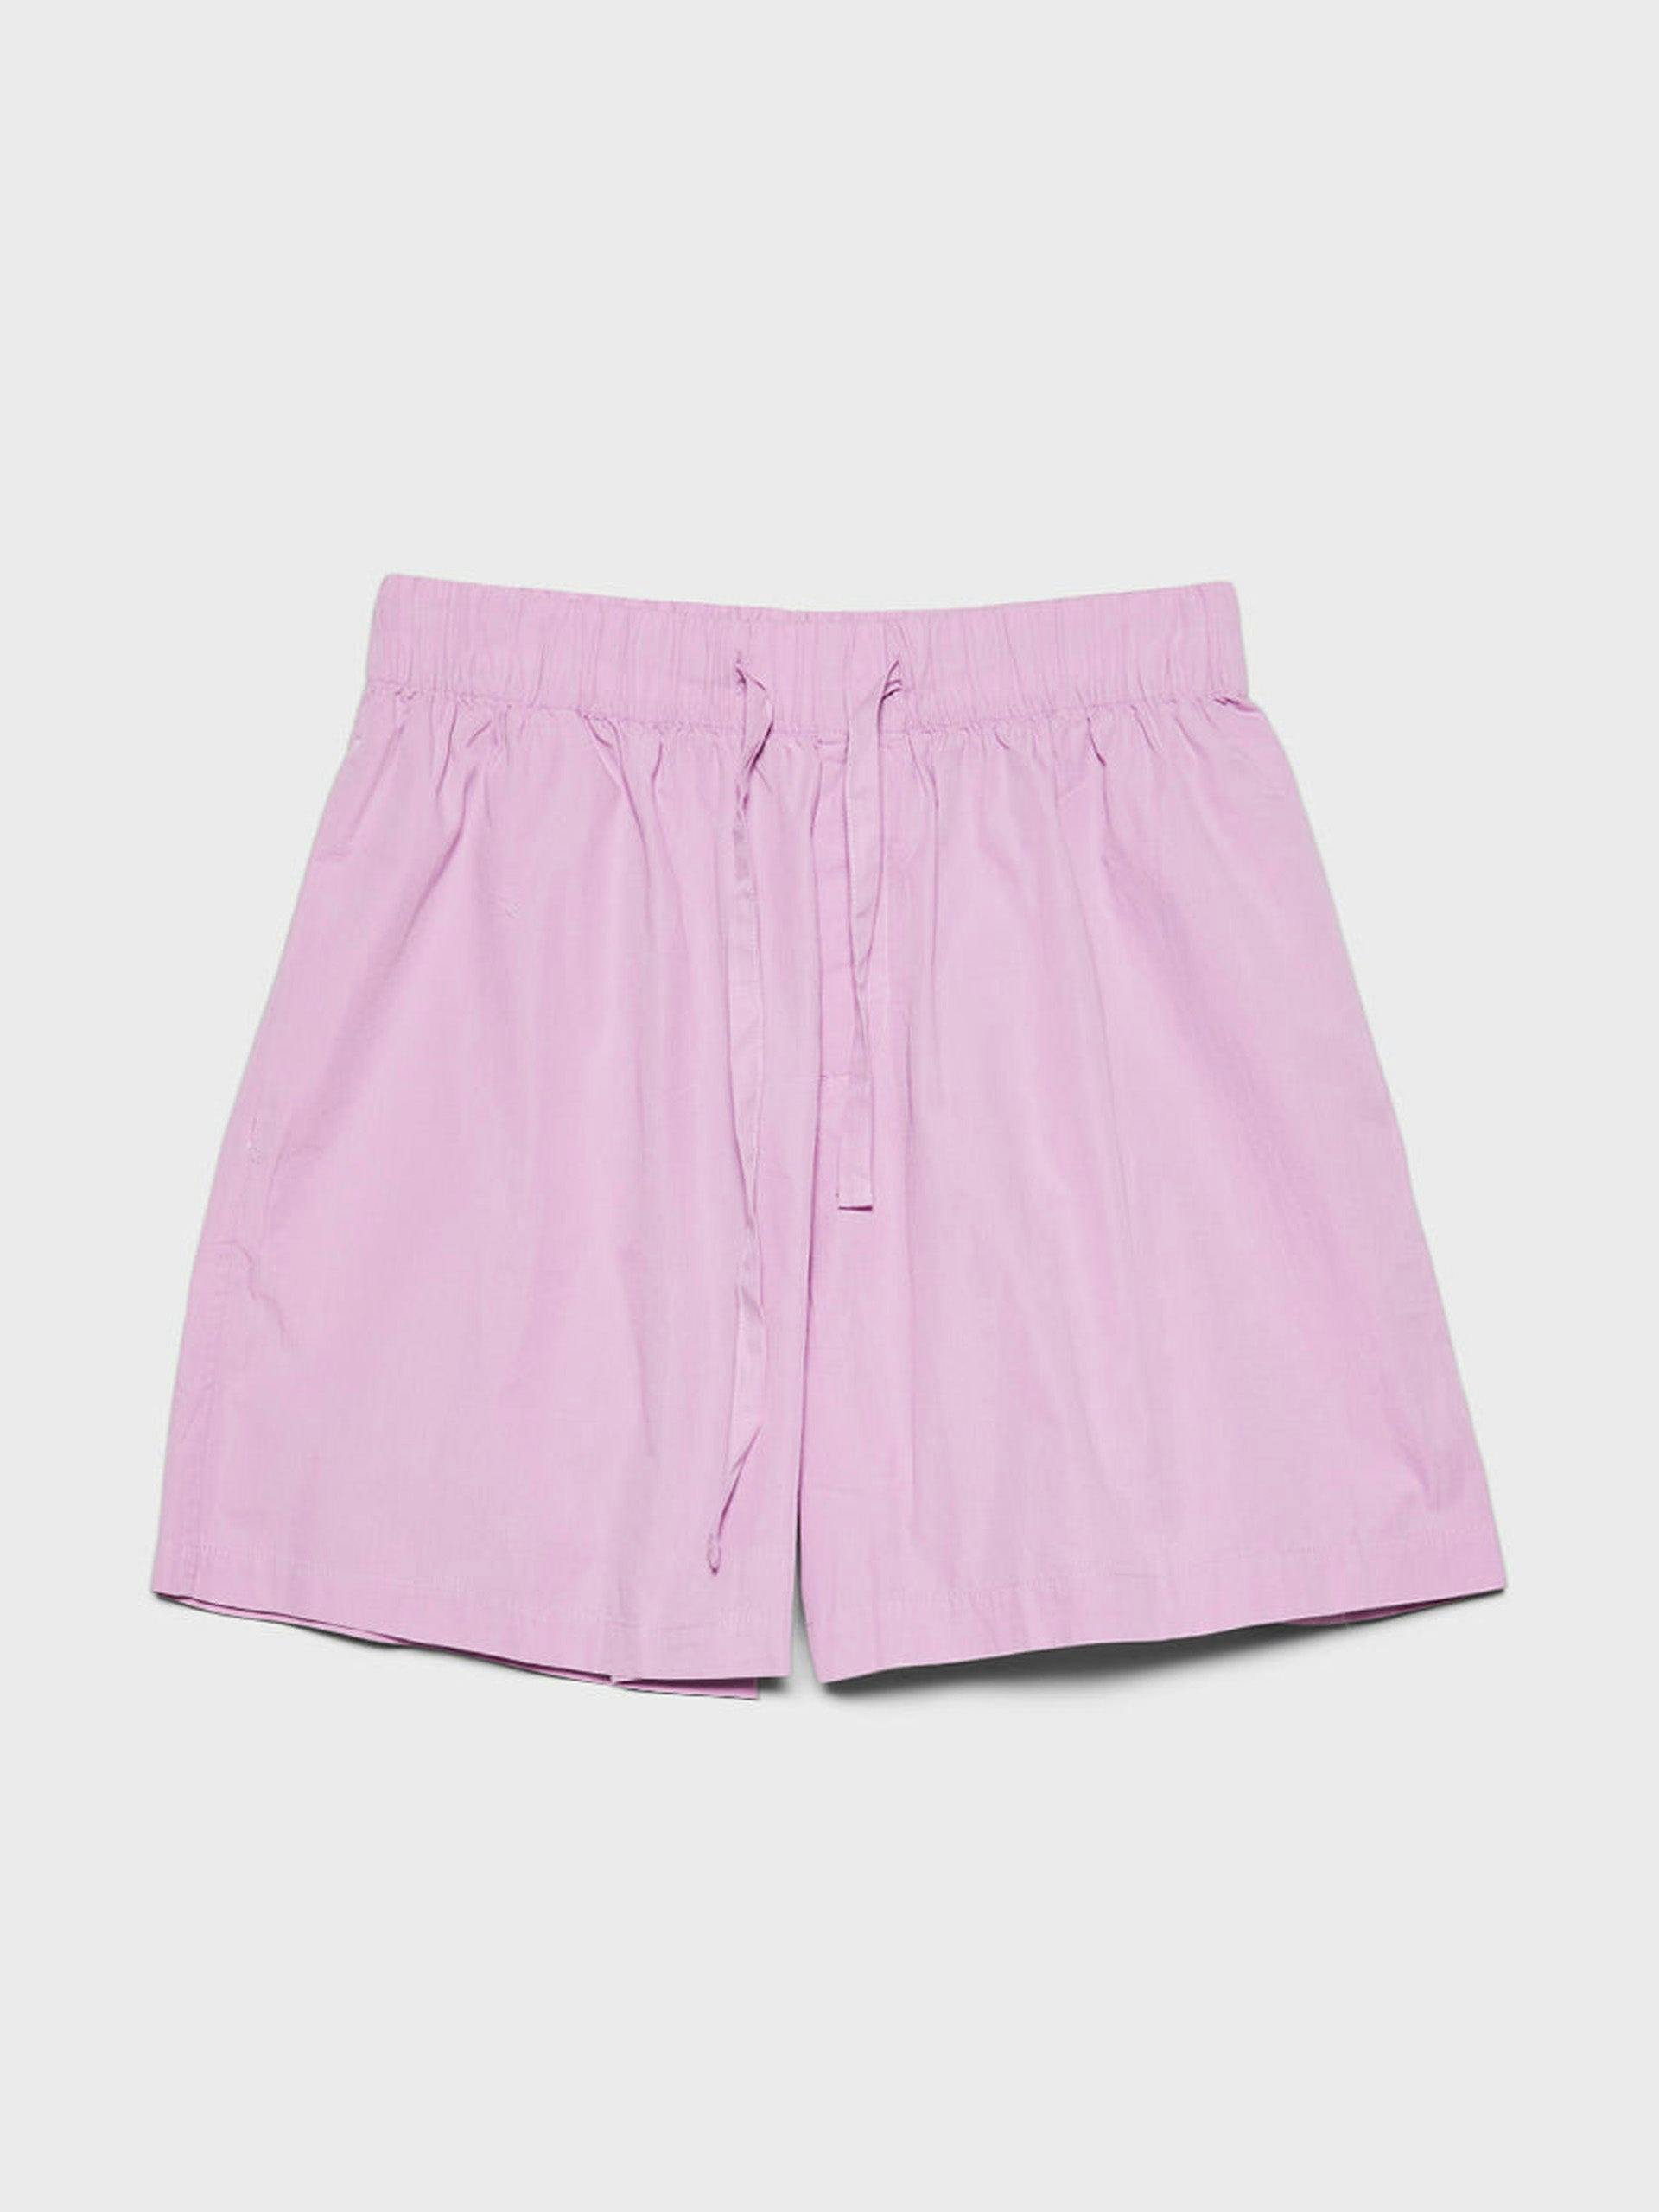 Poplin pyjamas shorts in purple pink